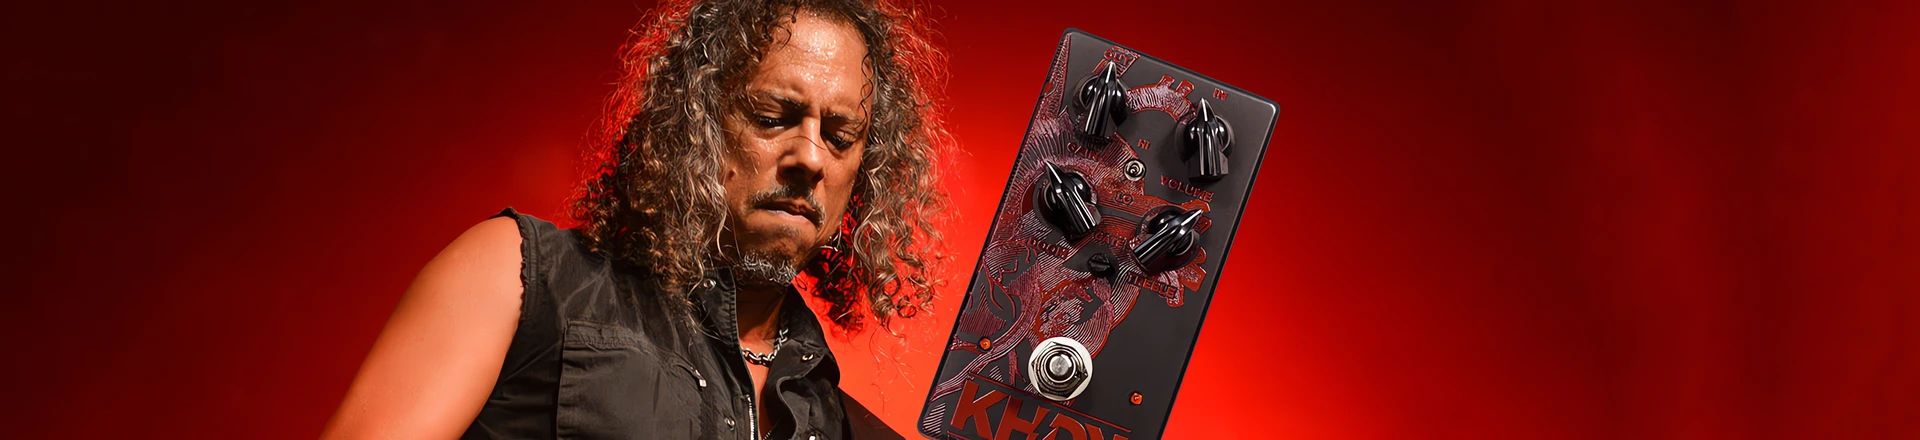 Kirk Hammett: KHDK Dark Blood zdominował nowy album